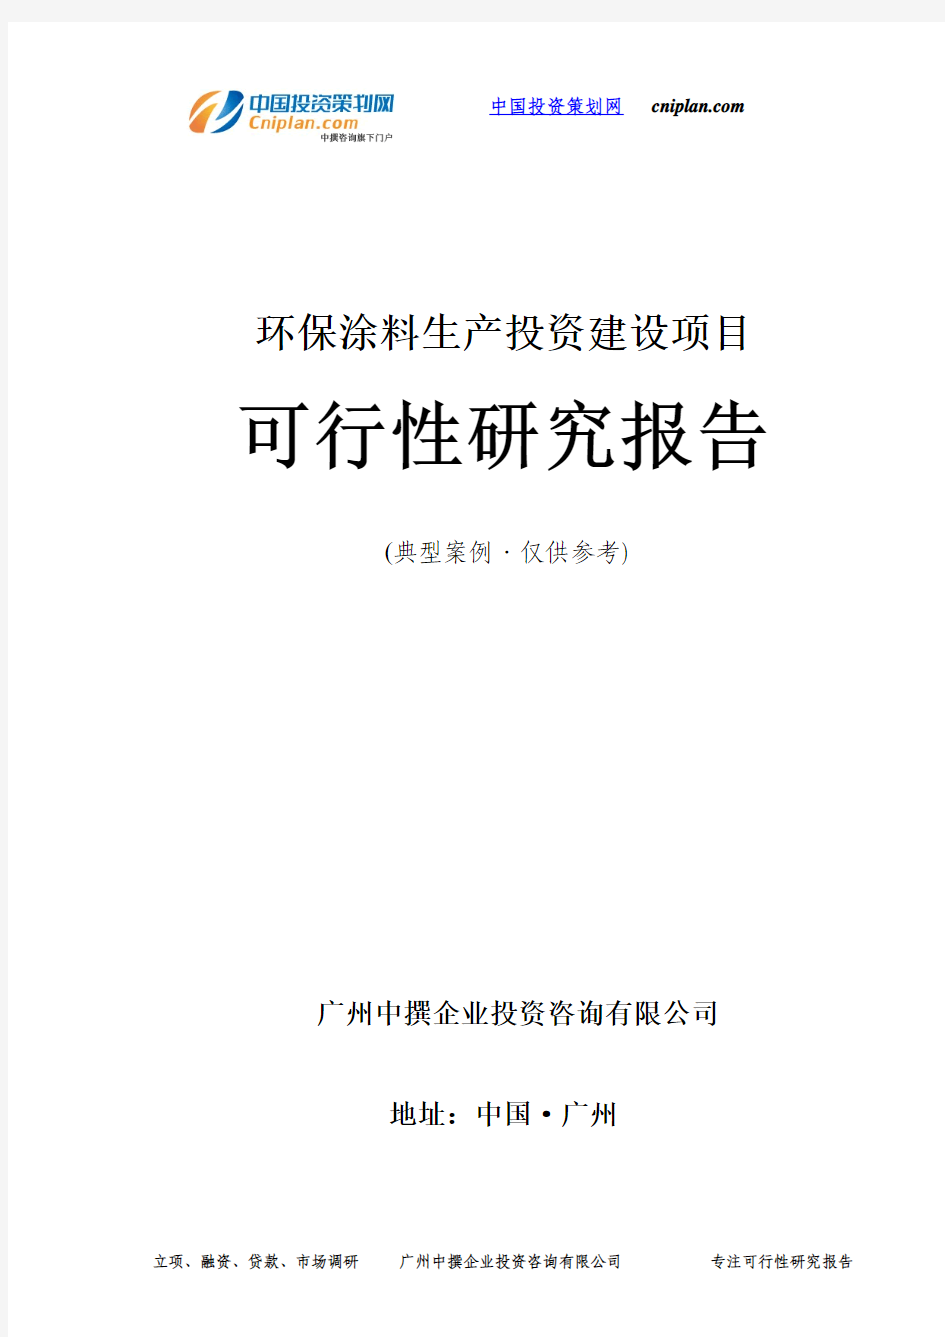 环保涂料生产投资建设项目可行性研究报告-广州中撰咨询